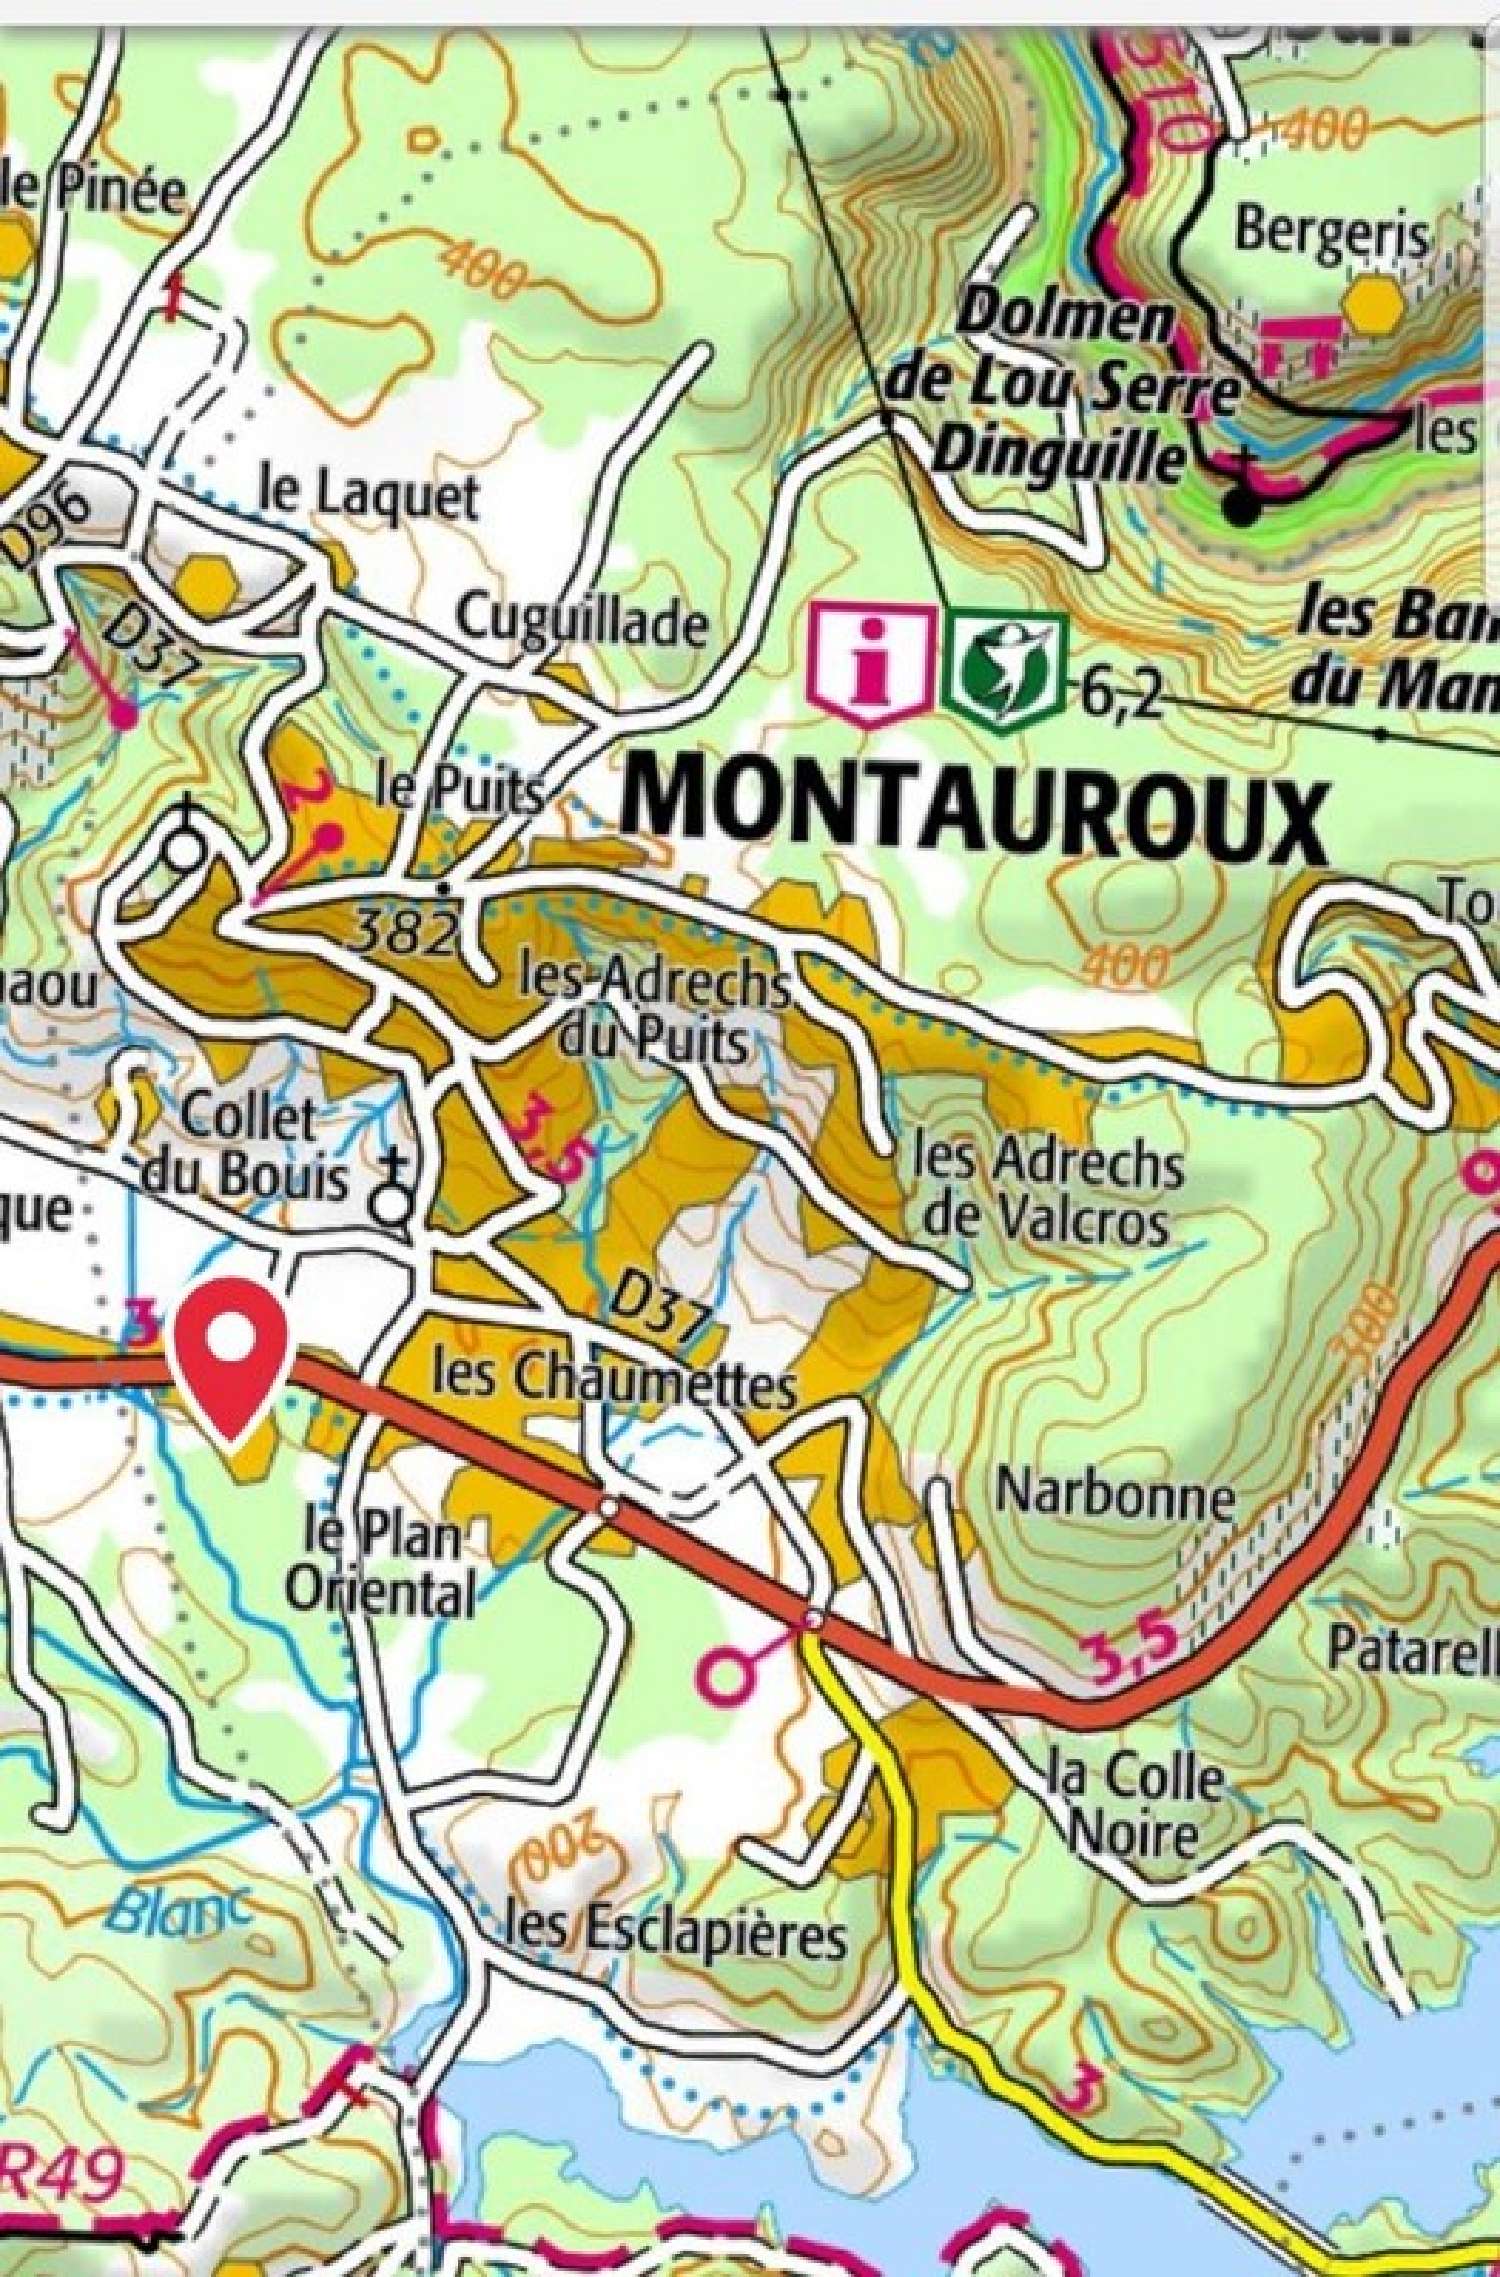  te koop terrein Montauroux Var 6